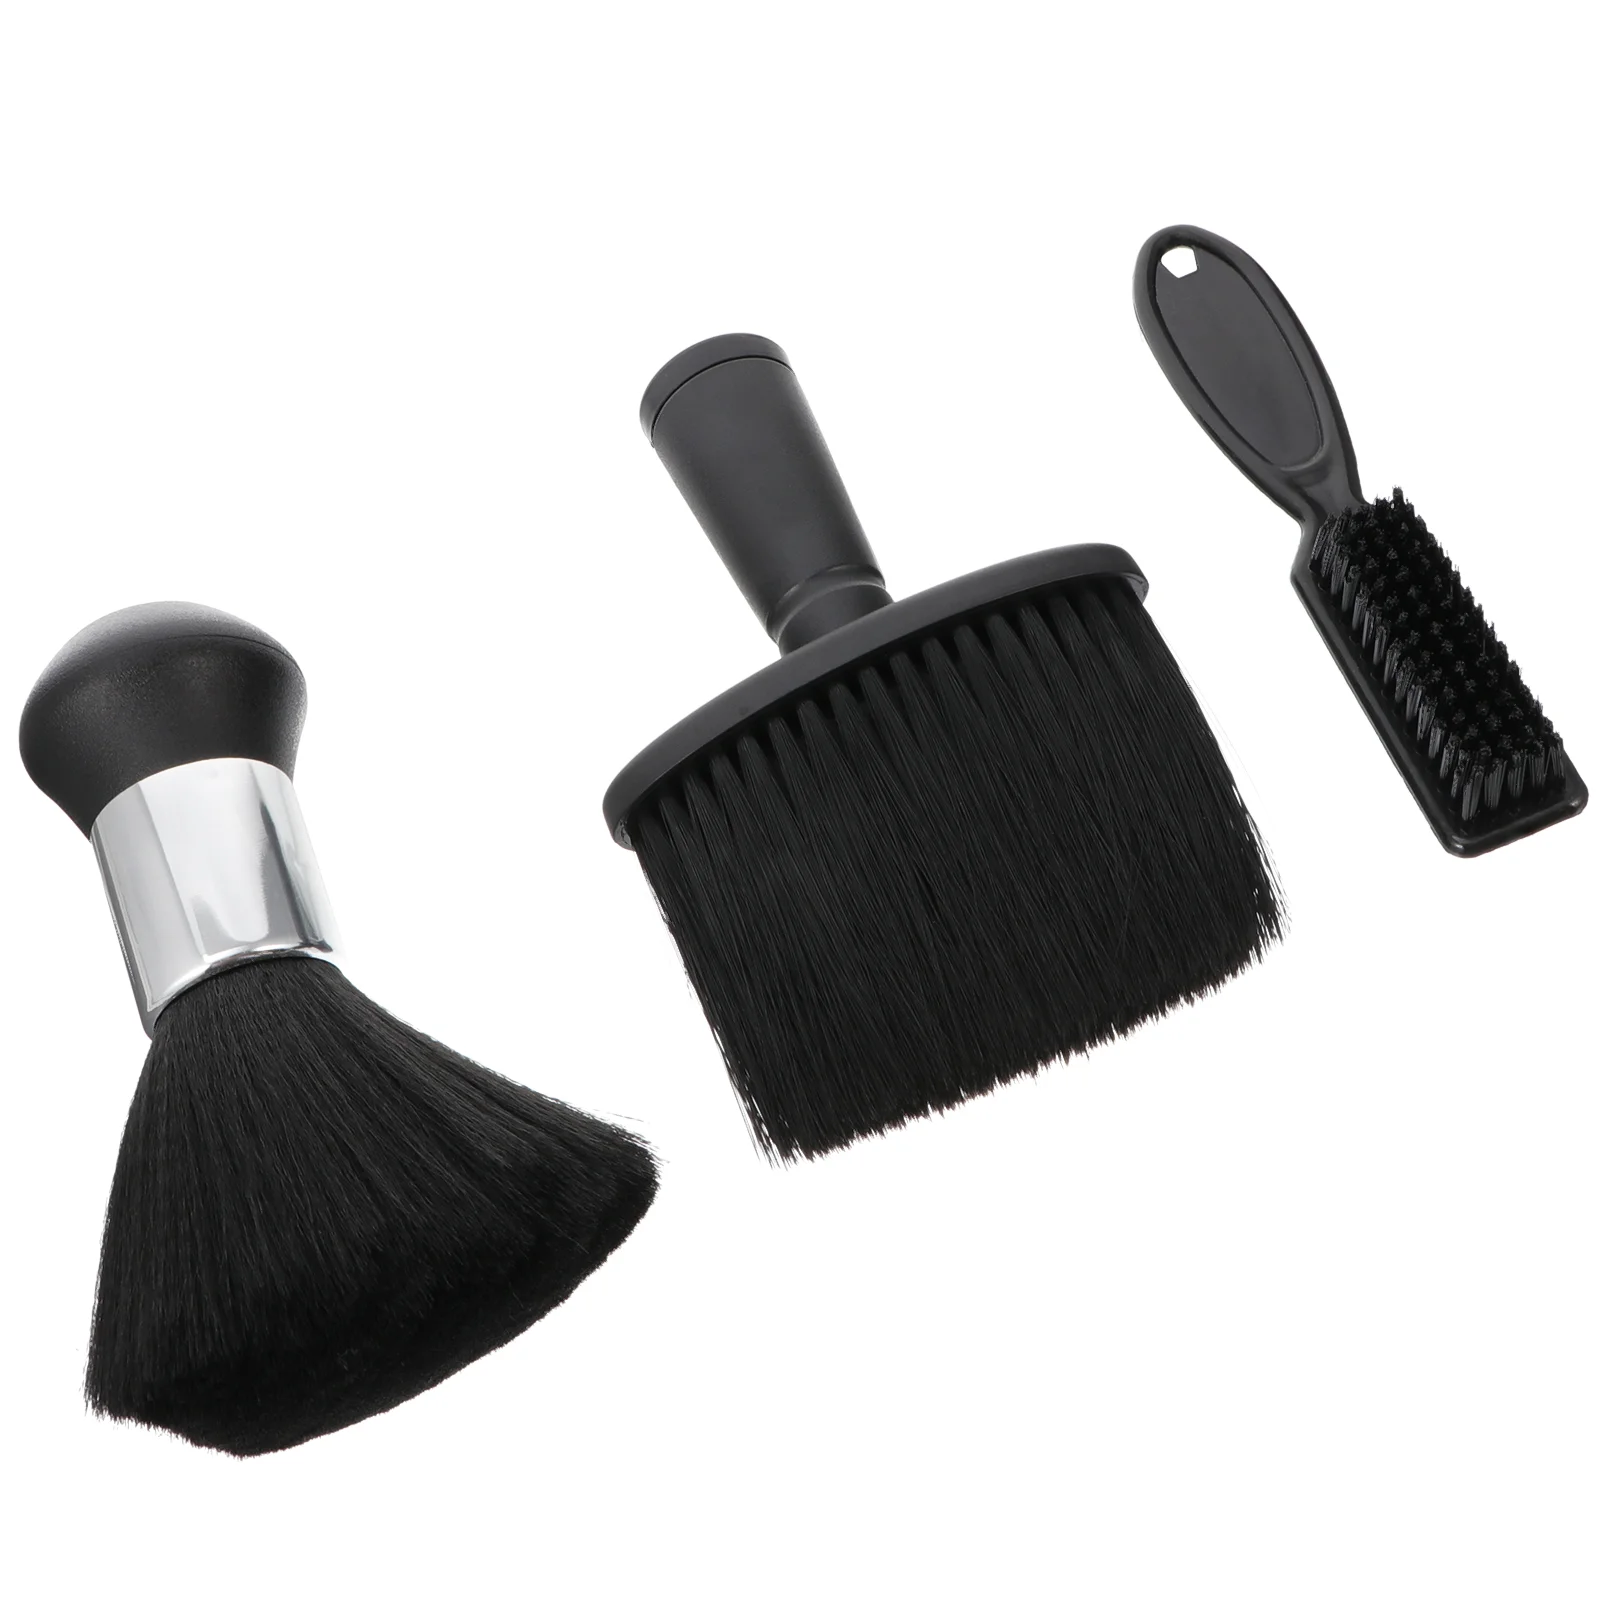 3 Pcs Barber Neck Duster Hair Duster Brush Mens Duster Neck Face Duster Brush Hairbrush Face Duster Hairbrush Cleaner Tool